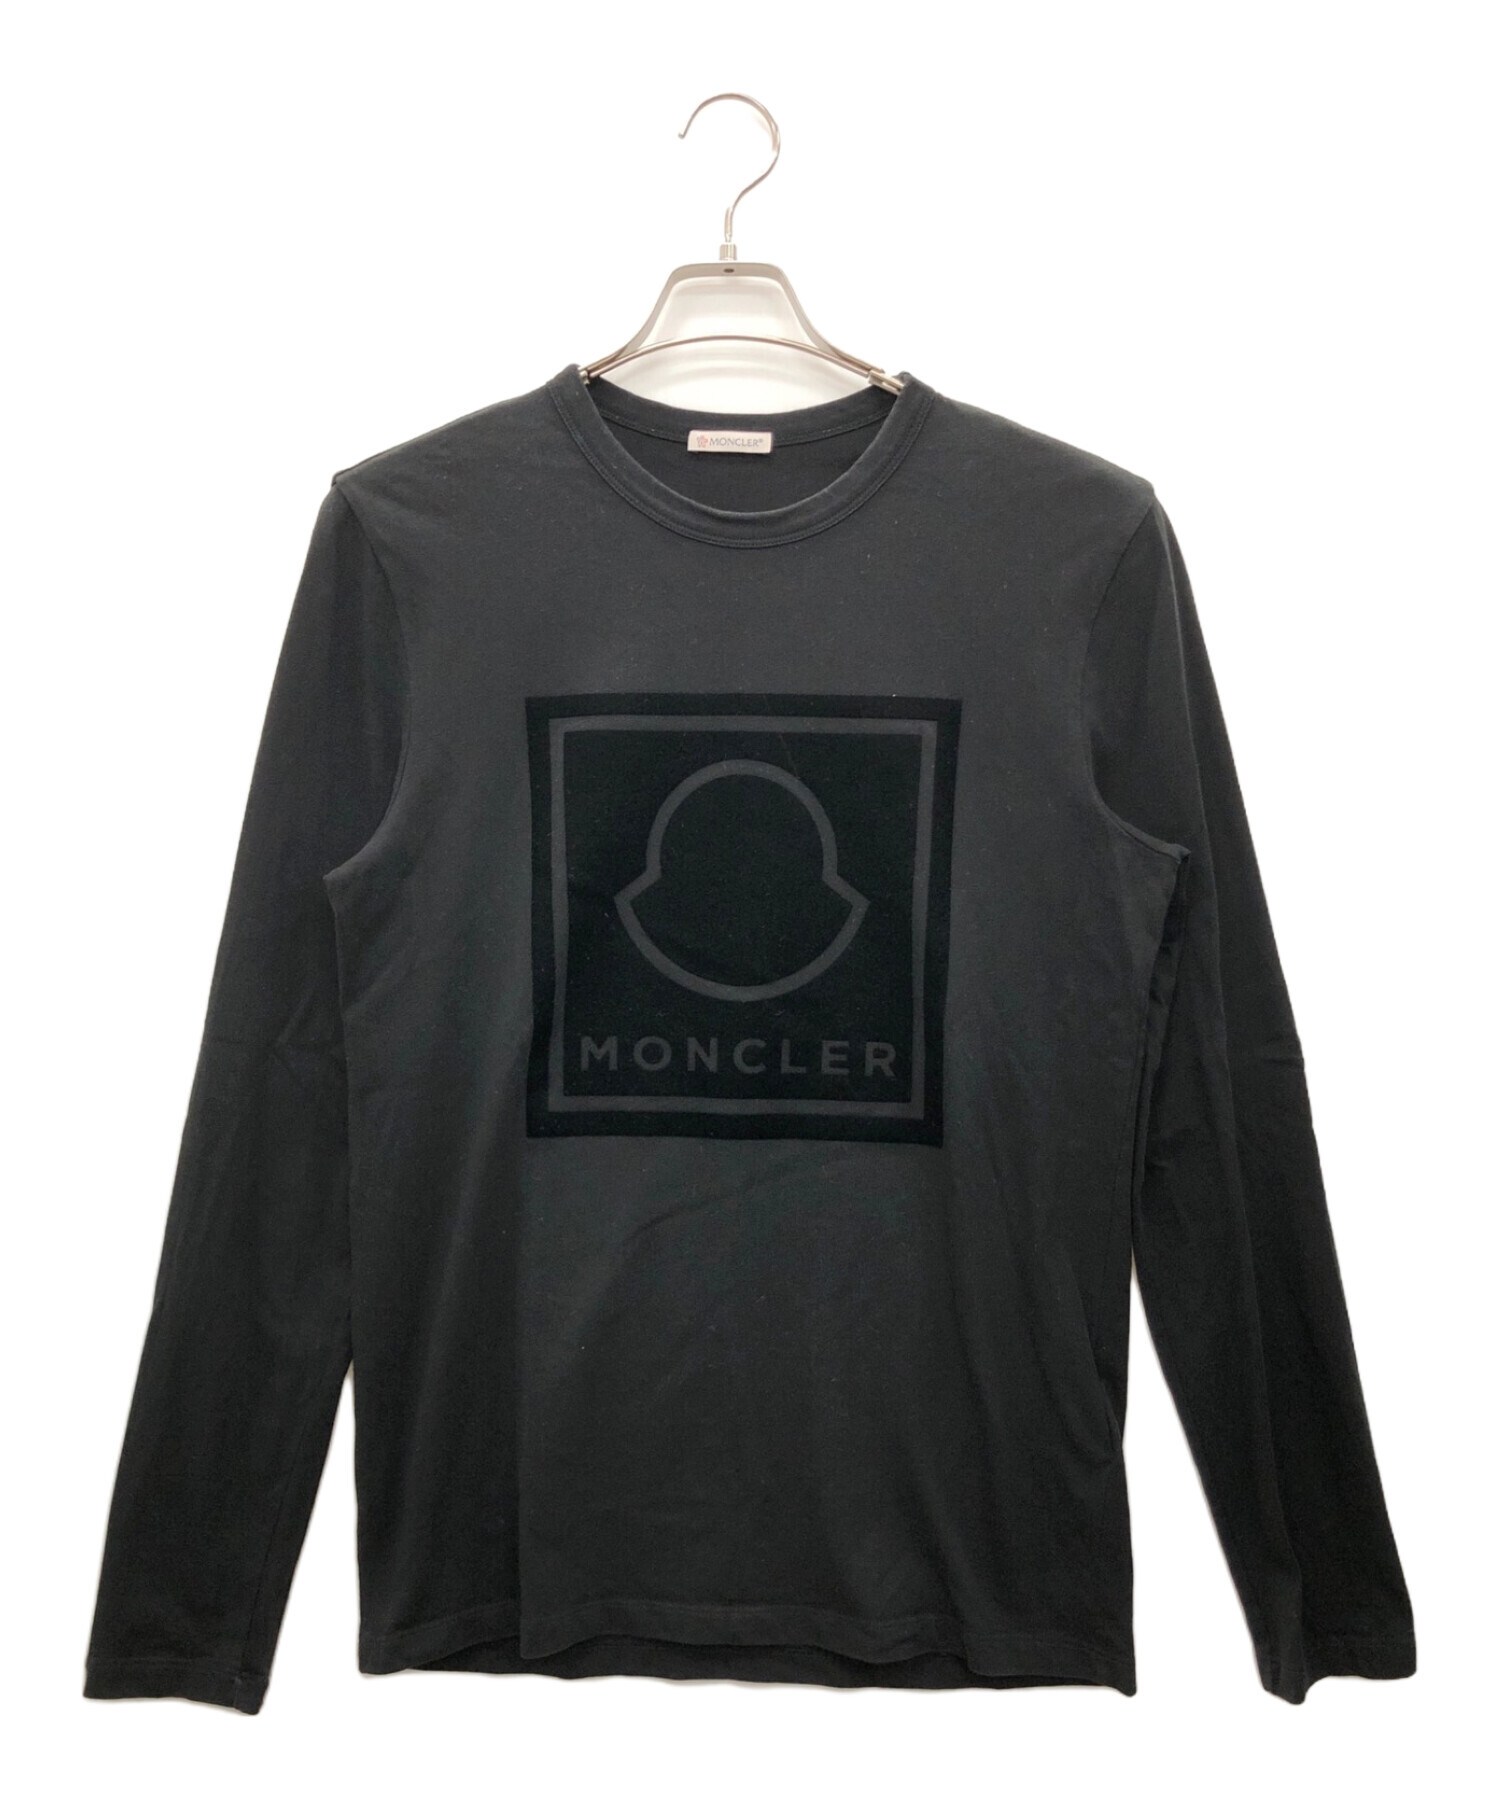 MONCLER (モンクレール) 長袖Tシャツ ブラック サイズ:S